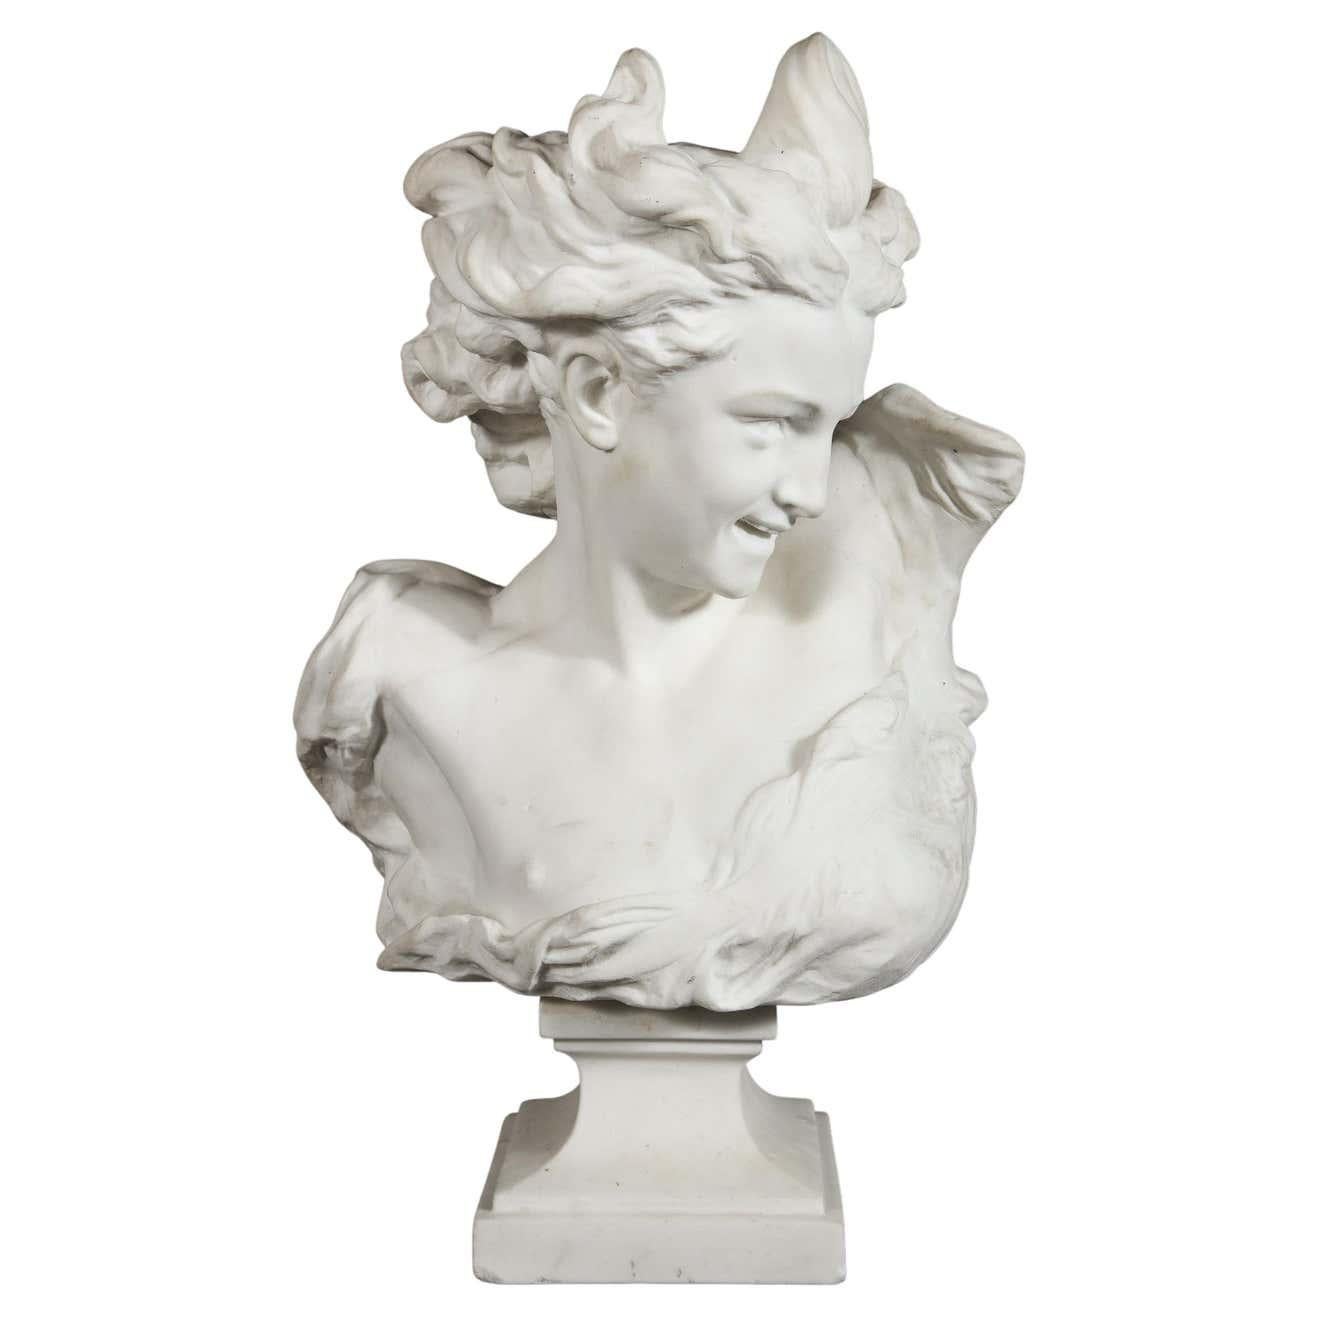 Jean-Baptiste Carpeaux (Franzose, 1827-1875) Büste aus weißem Marmor des "Genie De La Danse" (Geist des Tanzes), spät
19. Jahrhundert.  

Carpeaux war ein französischer Bildhauer und Maler während des Zweiten Kaiserreichs unter Napoleon III. 